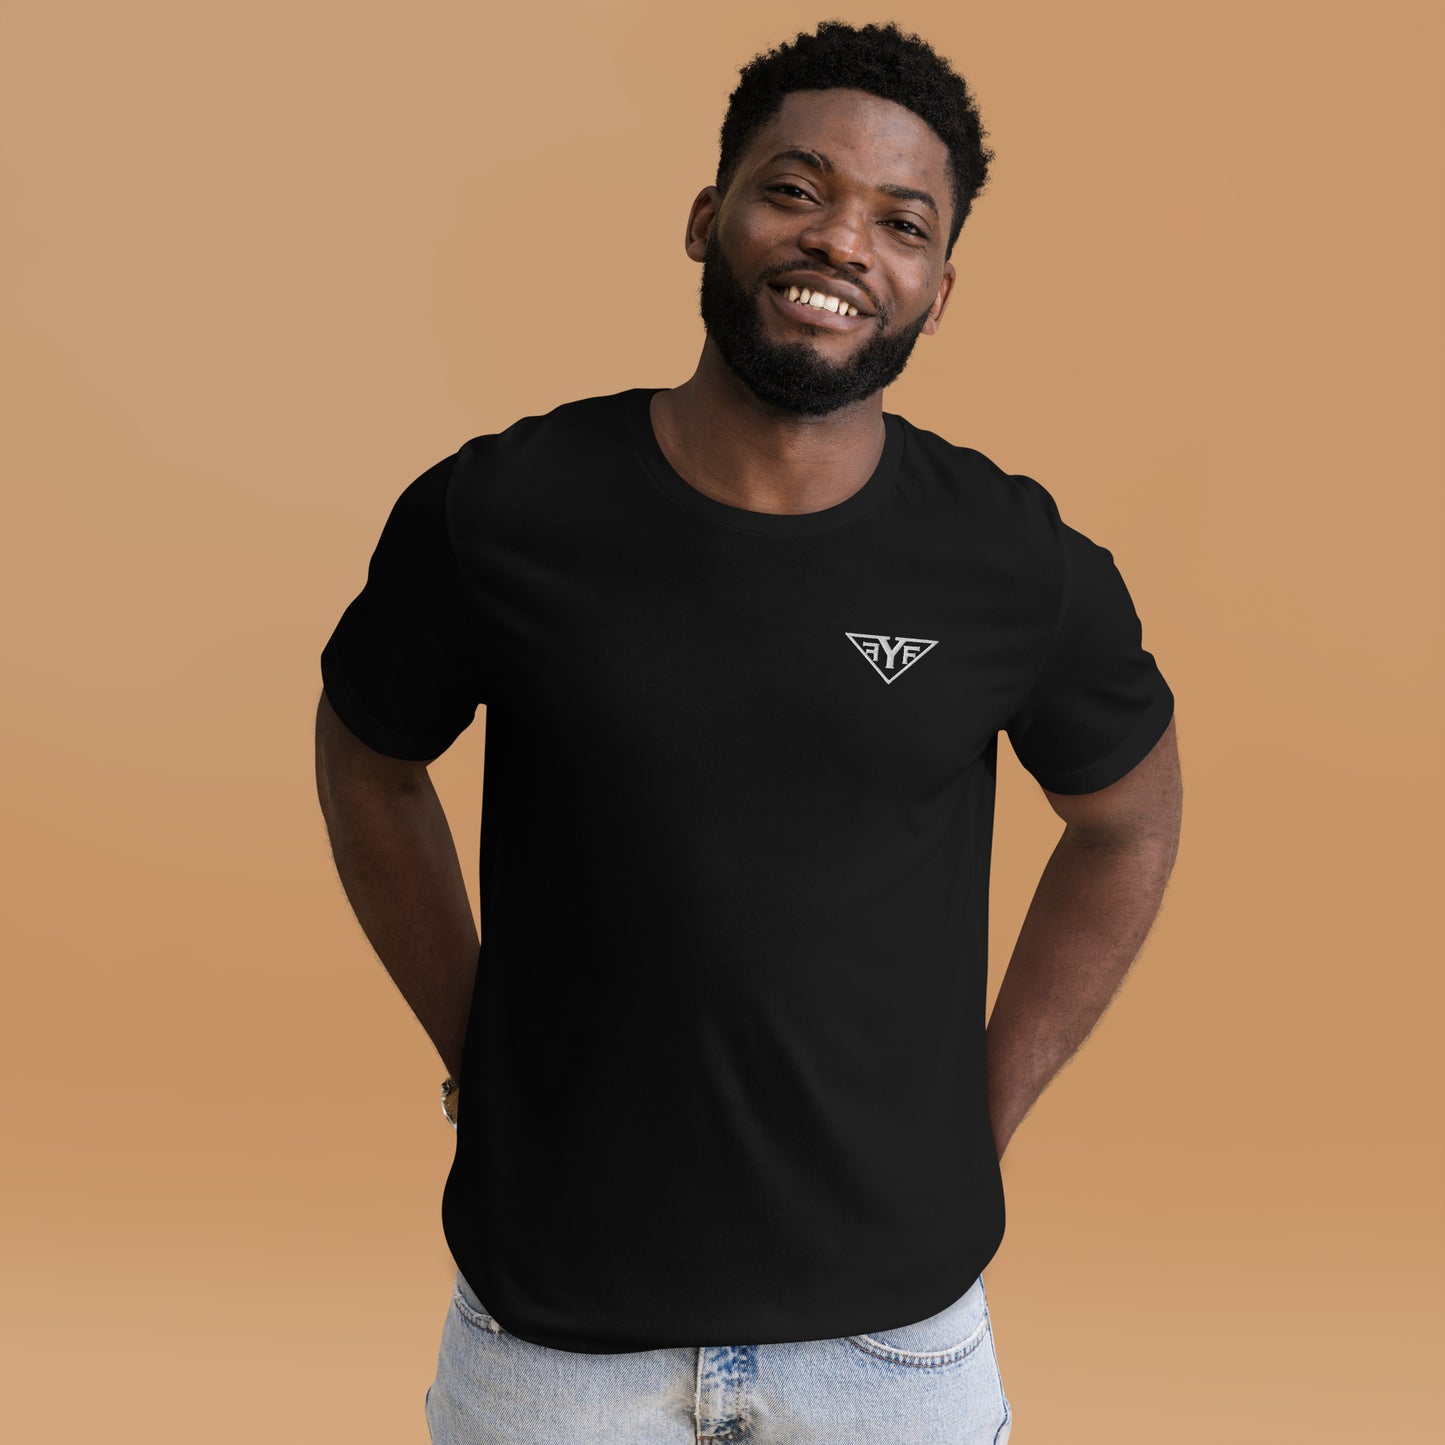 Unisex t-shirt (NO WORDING ON BACK)